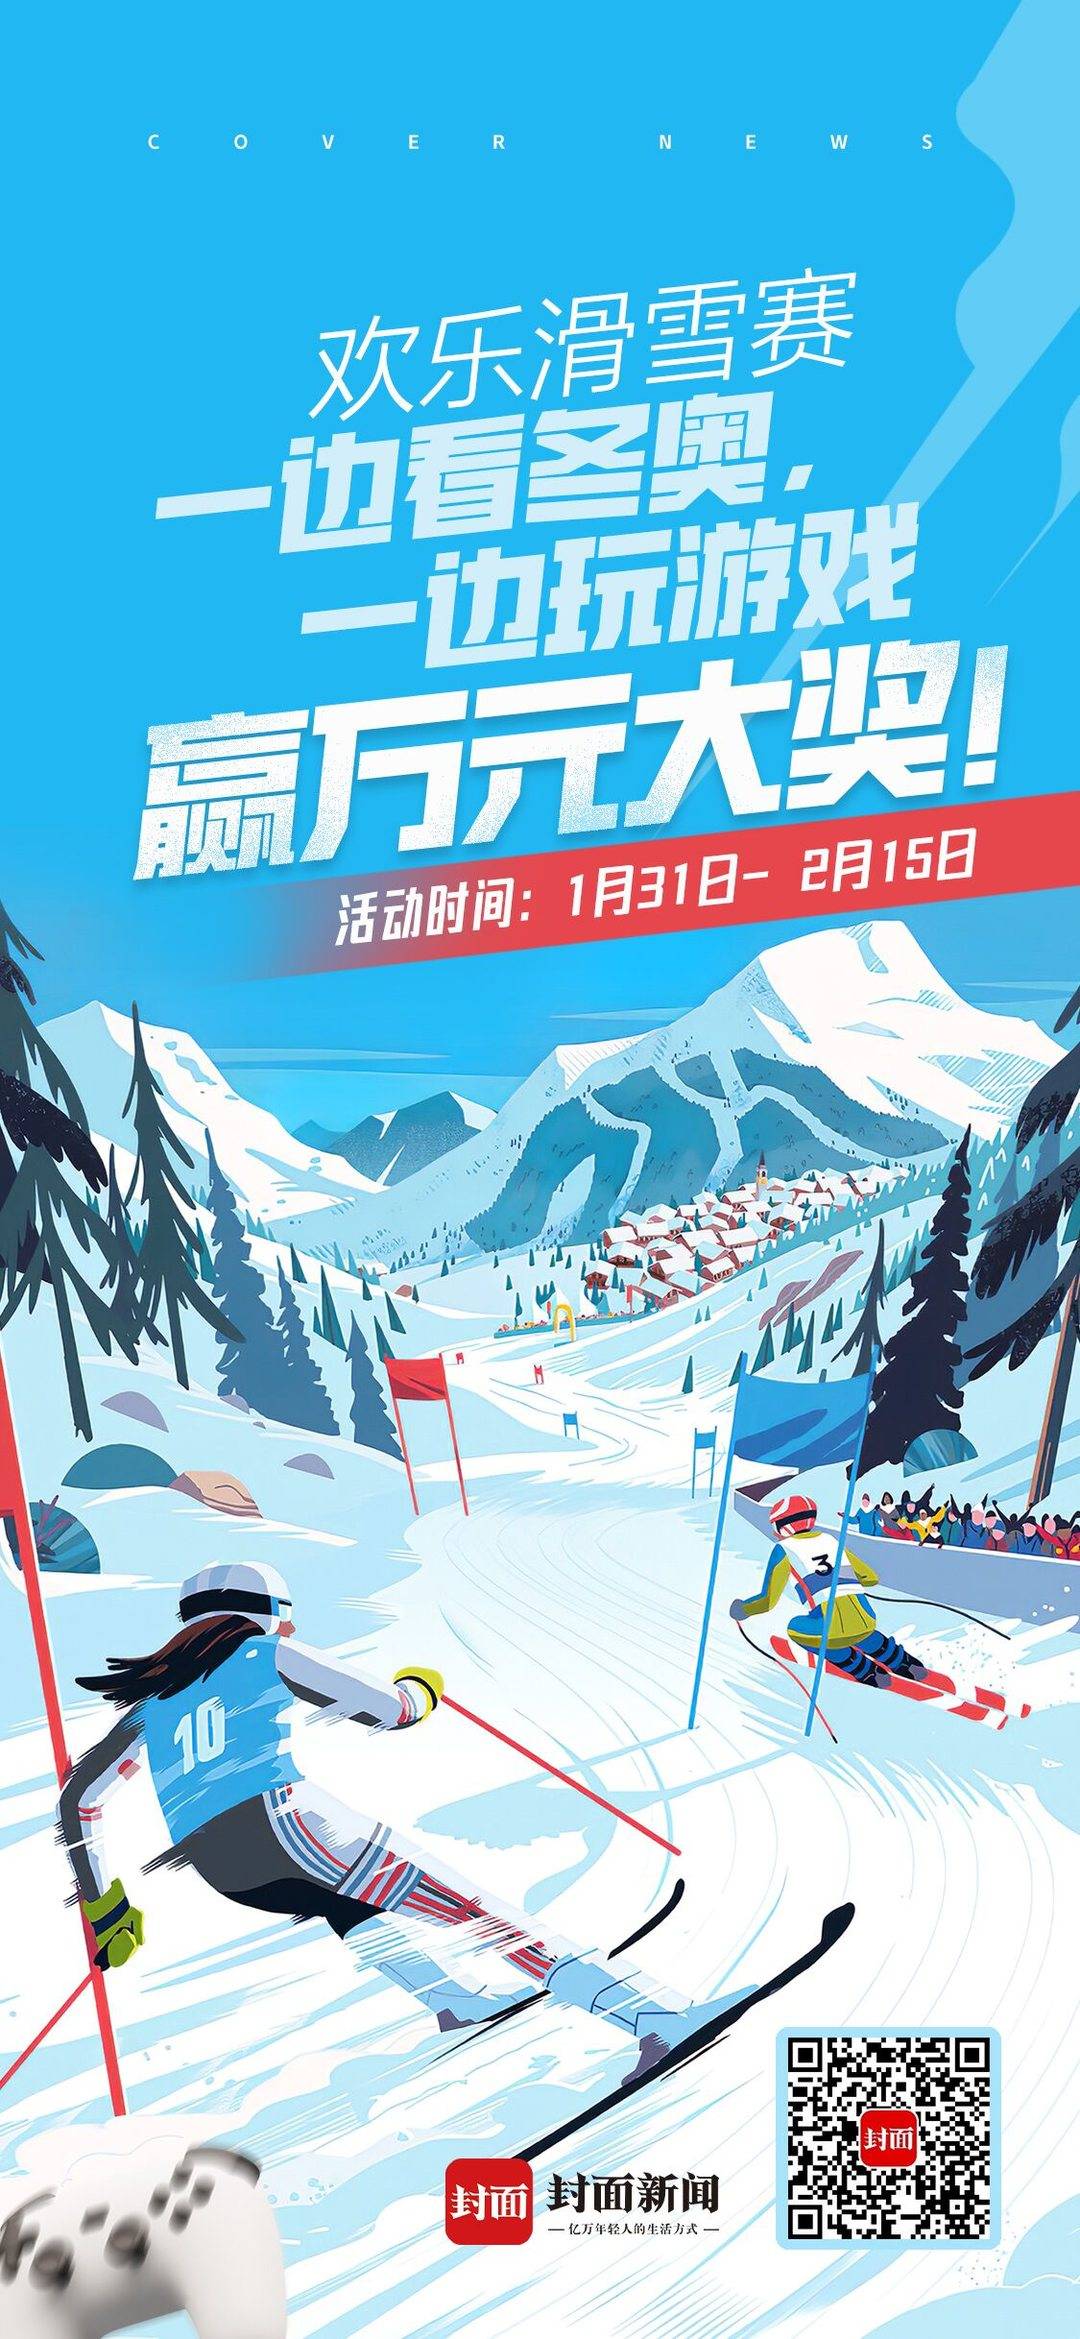 一起前进，分享万元大奖！冬季奥运会的迷你游戏“快乐滑雪”今天开幕